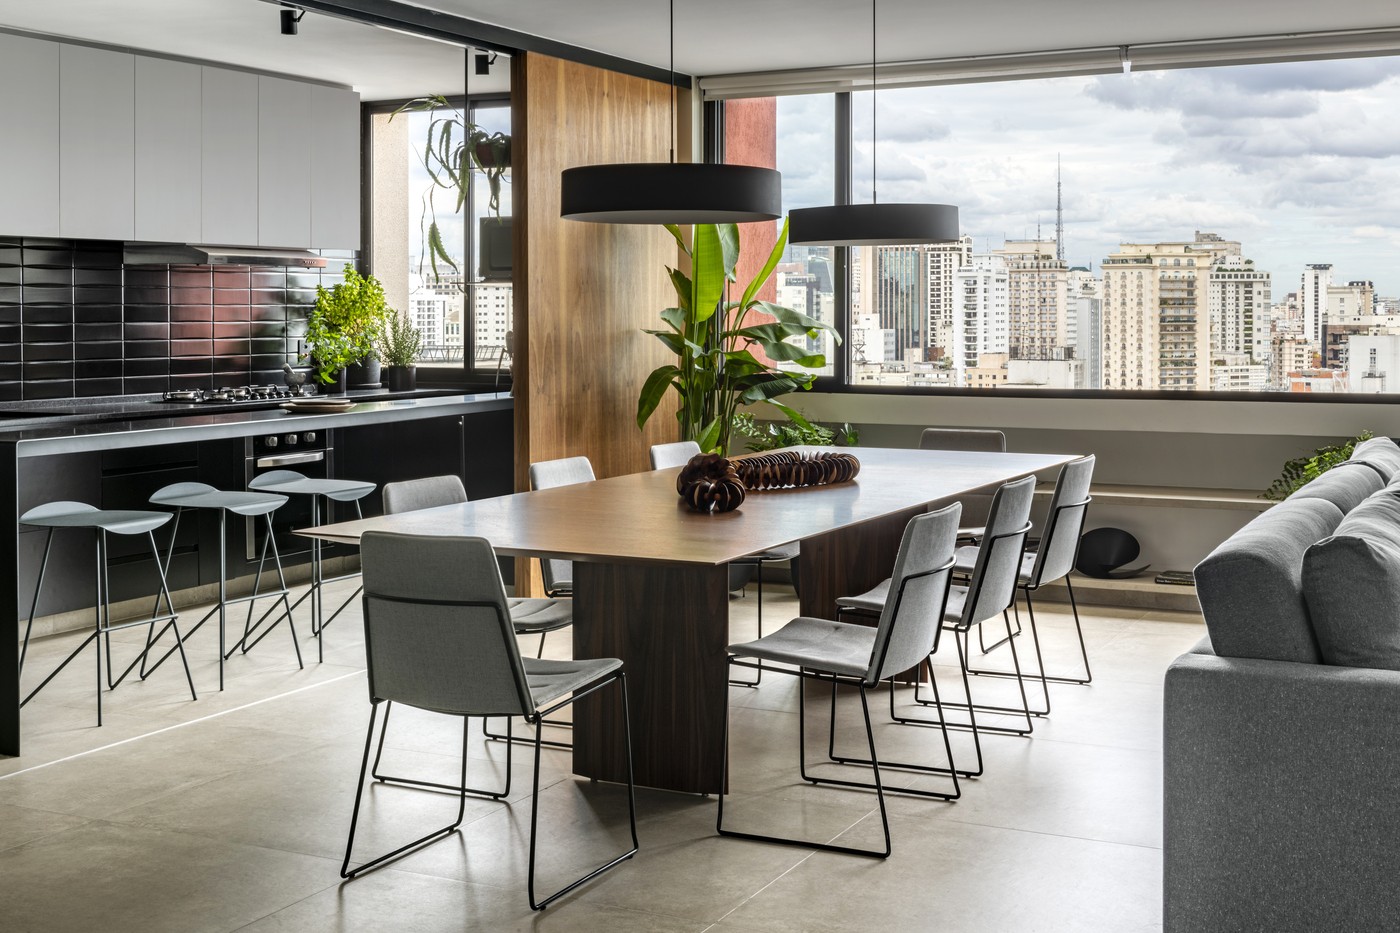 Décor do dia: sala de jantar com vista panorâmica e estilo contemporâneo (Foto: Renato Navarro)